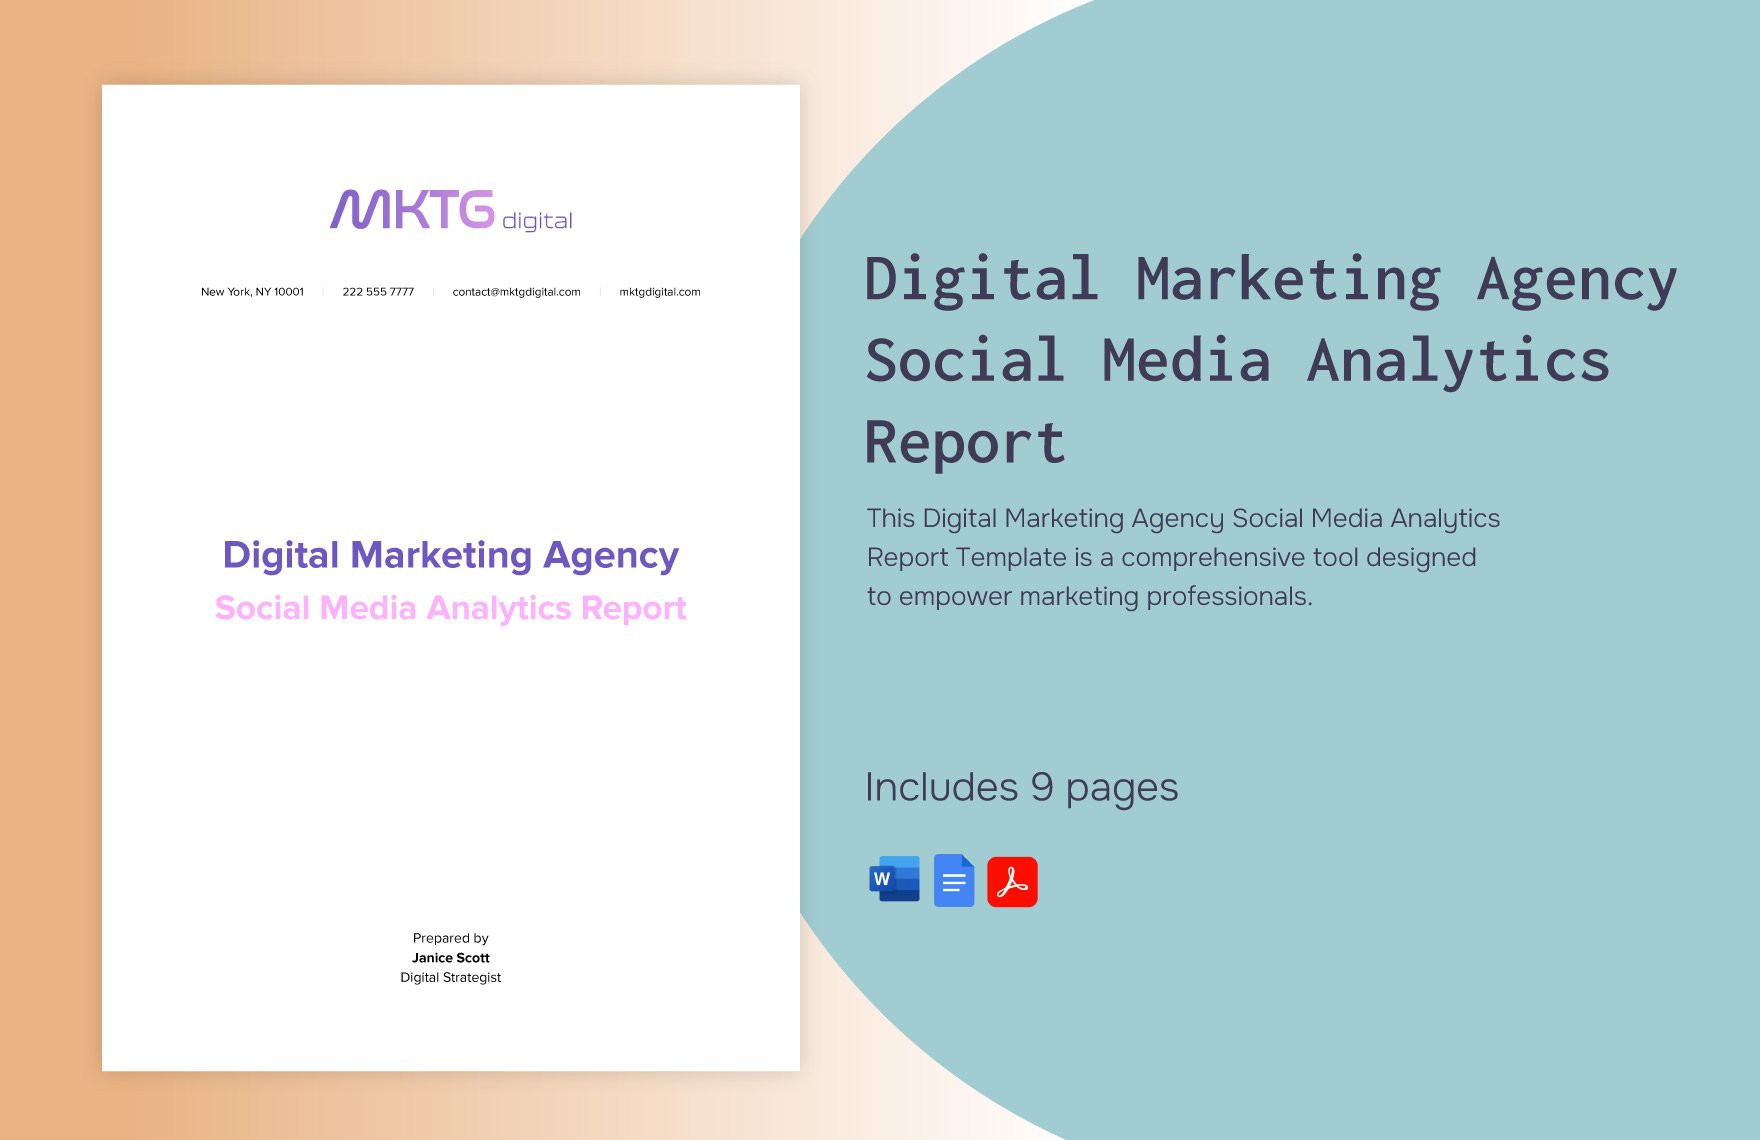 Digital Marketing Agency Social Media Analytics Report Template